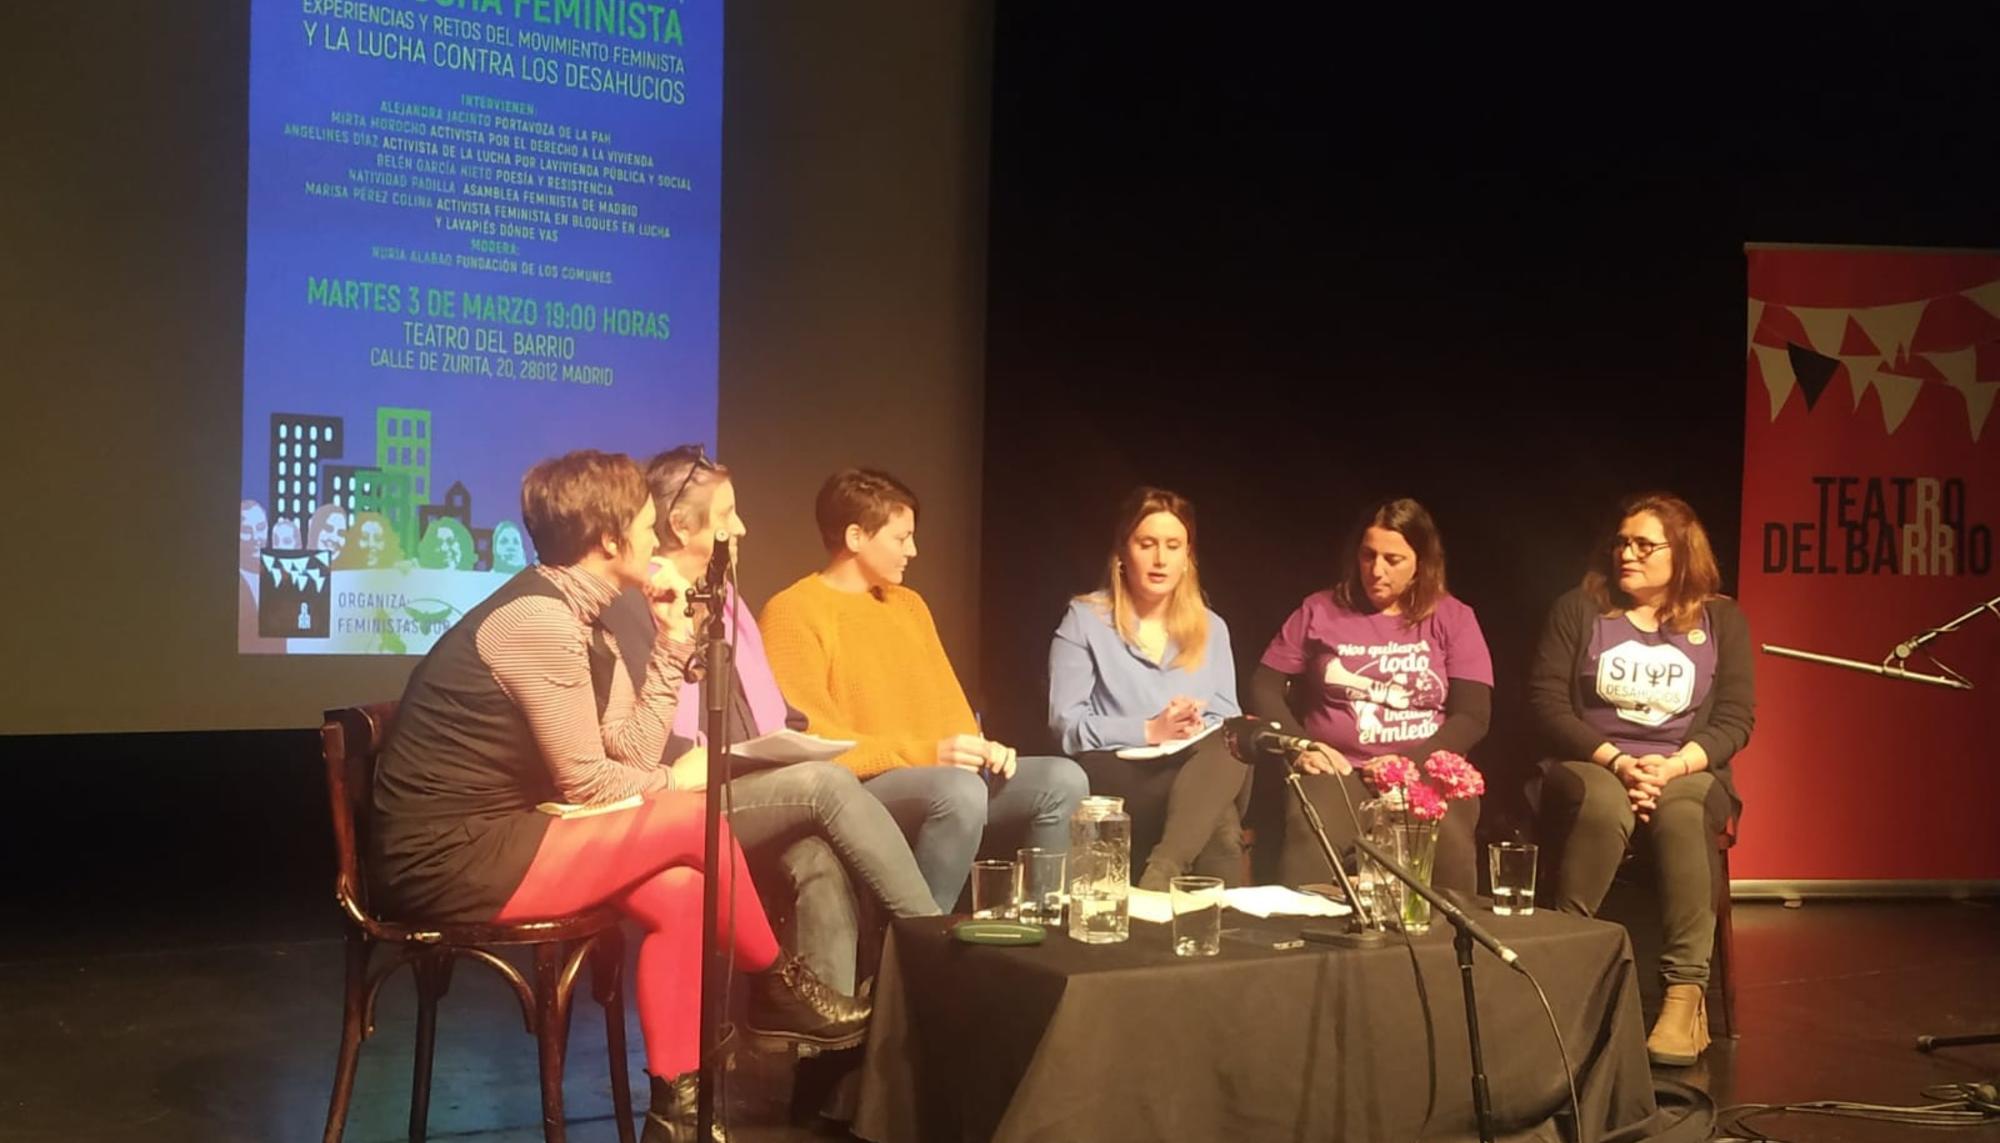 Acto "La lucha de Vivienda, una lucha feminista", en el Teatro de Barrio de Madrid